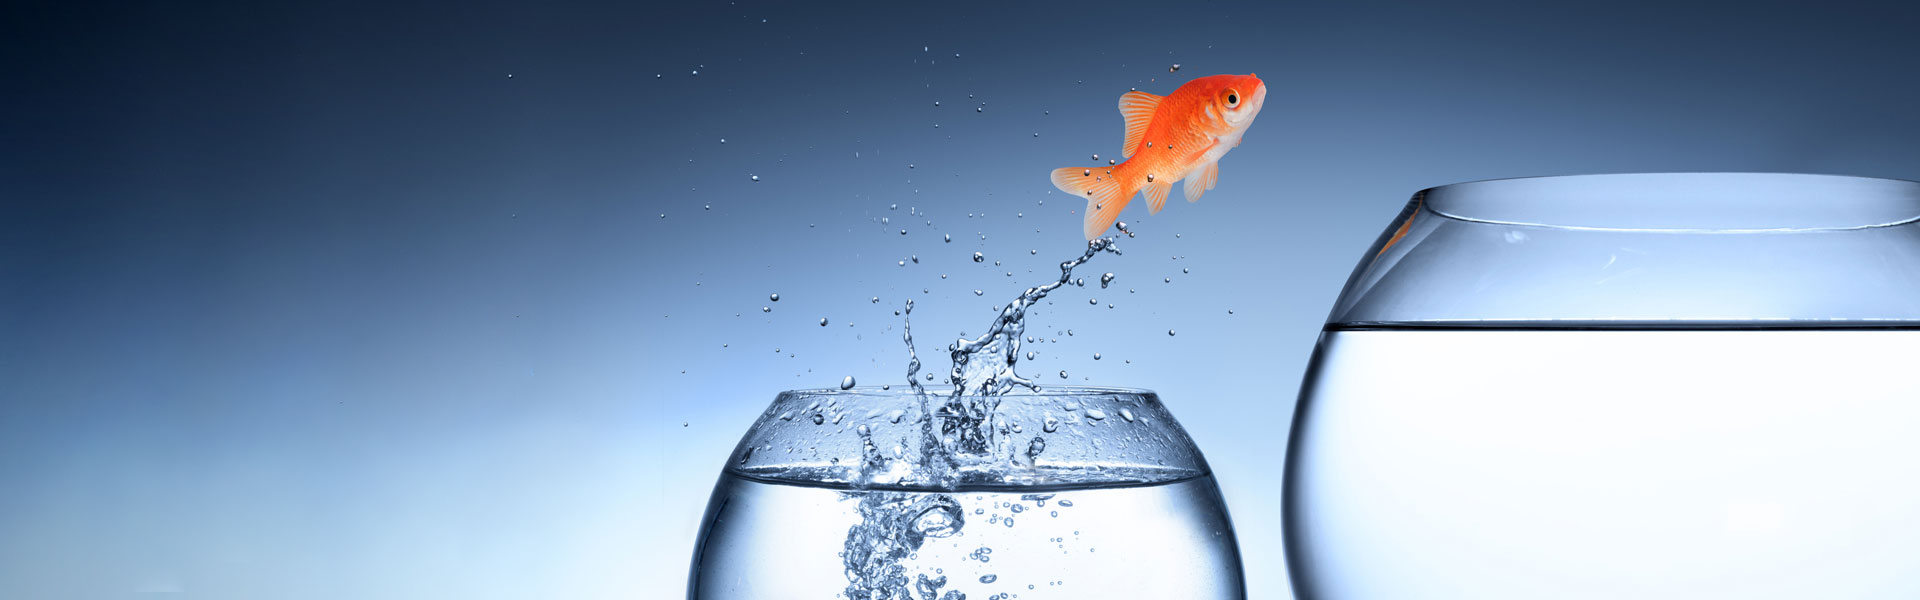 Ein Goldfisch springt aus einem Wasserglas